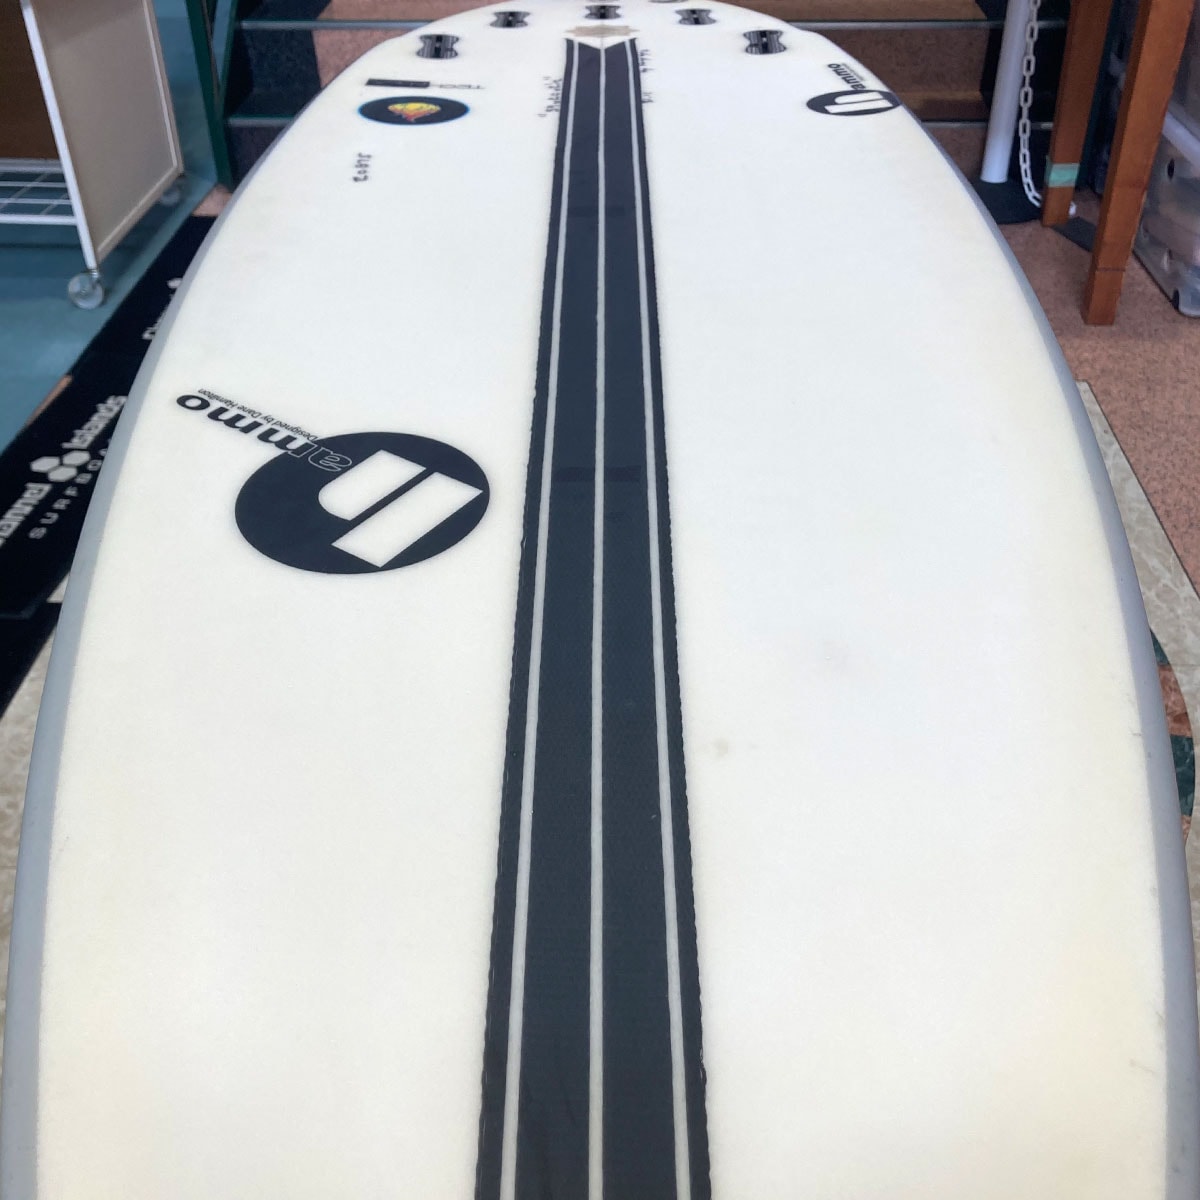 中古ボード サーフボード サーフィン USED SURFBOARD 【used243】HAMMO FIREBALL ハモサーフボード ファイヤーボール  5'9 x 20 x 2'1/2 【31.11L】-ジャックオーシャンスポーツ